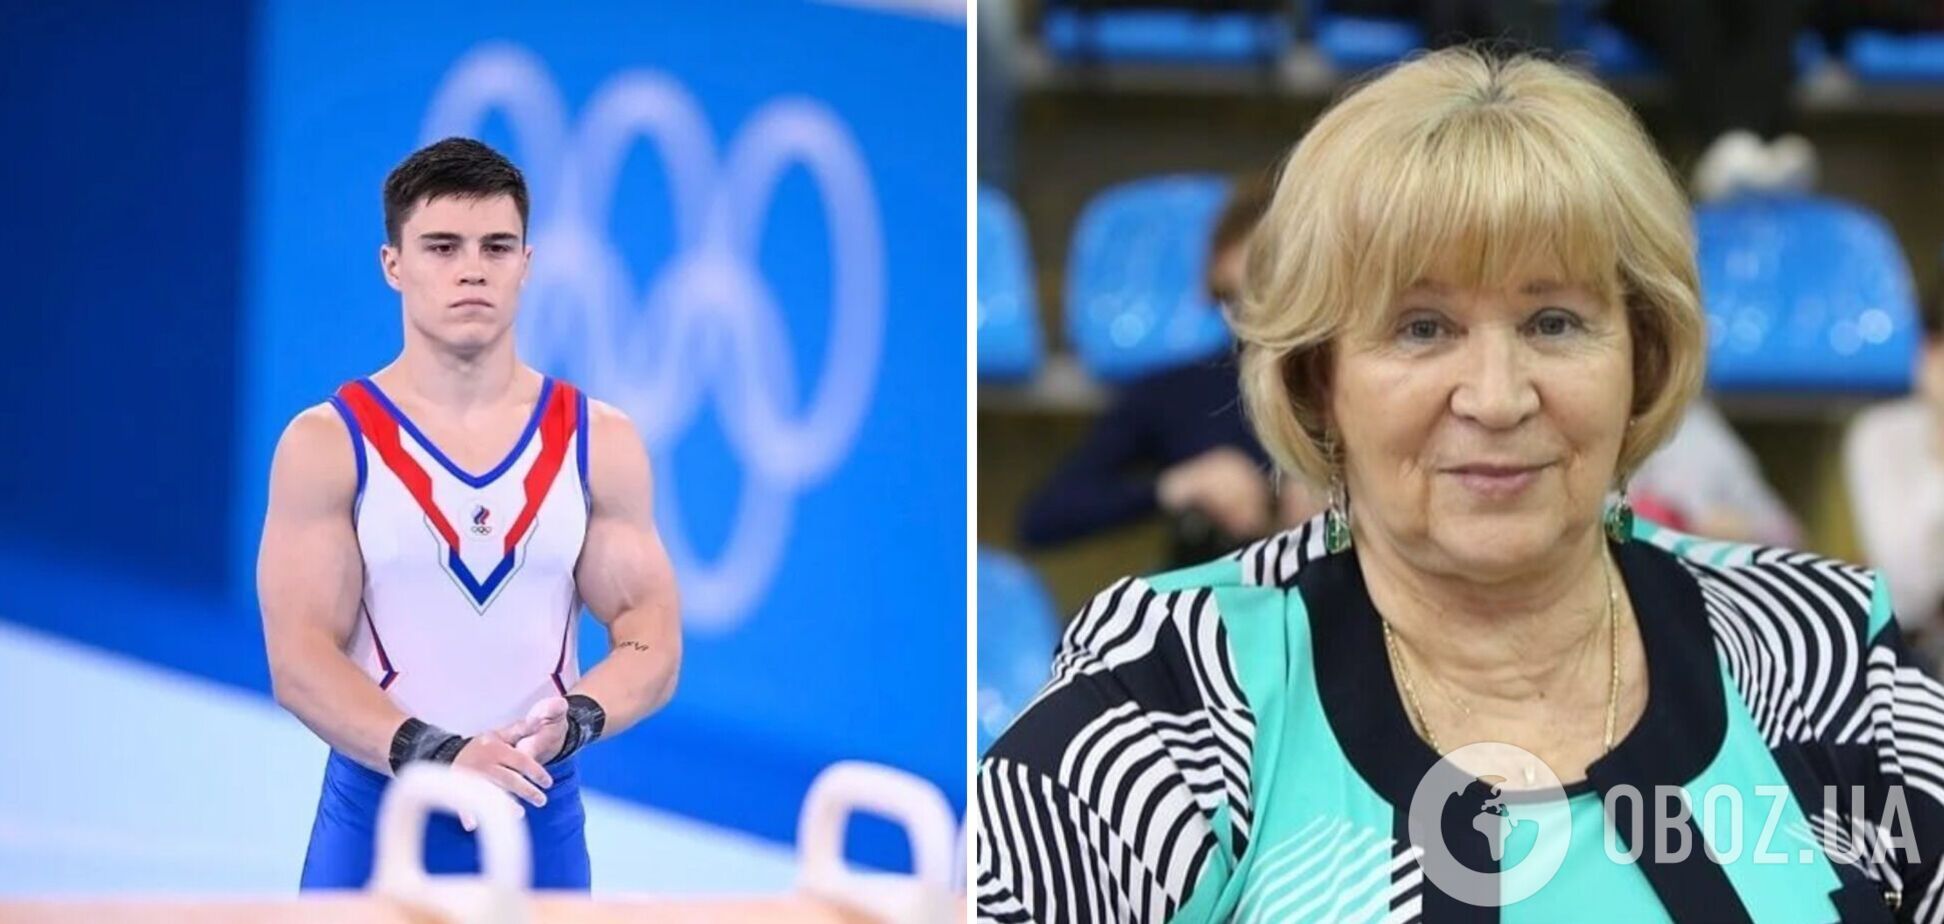 'Мы не предатели': российские гимнасты заявили, что 'намеренно не участвуют в отборе на Олимпиаду'